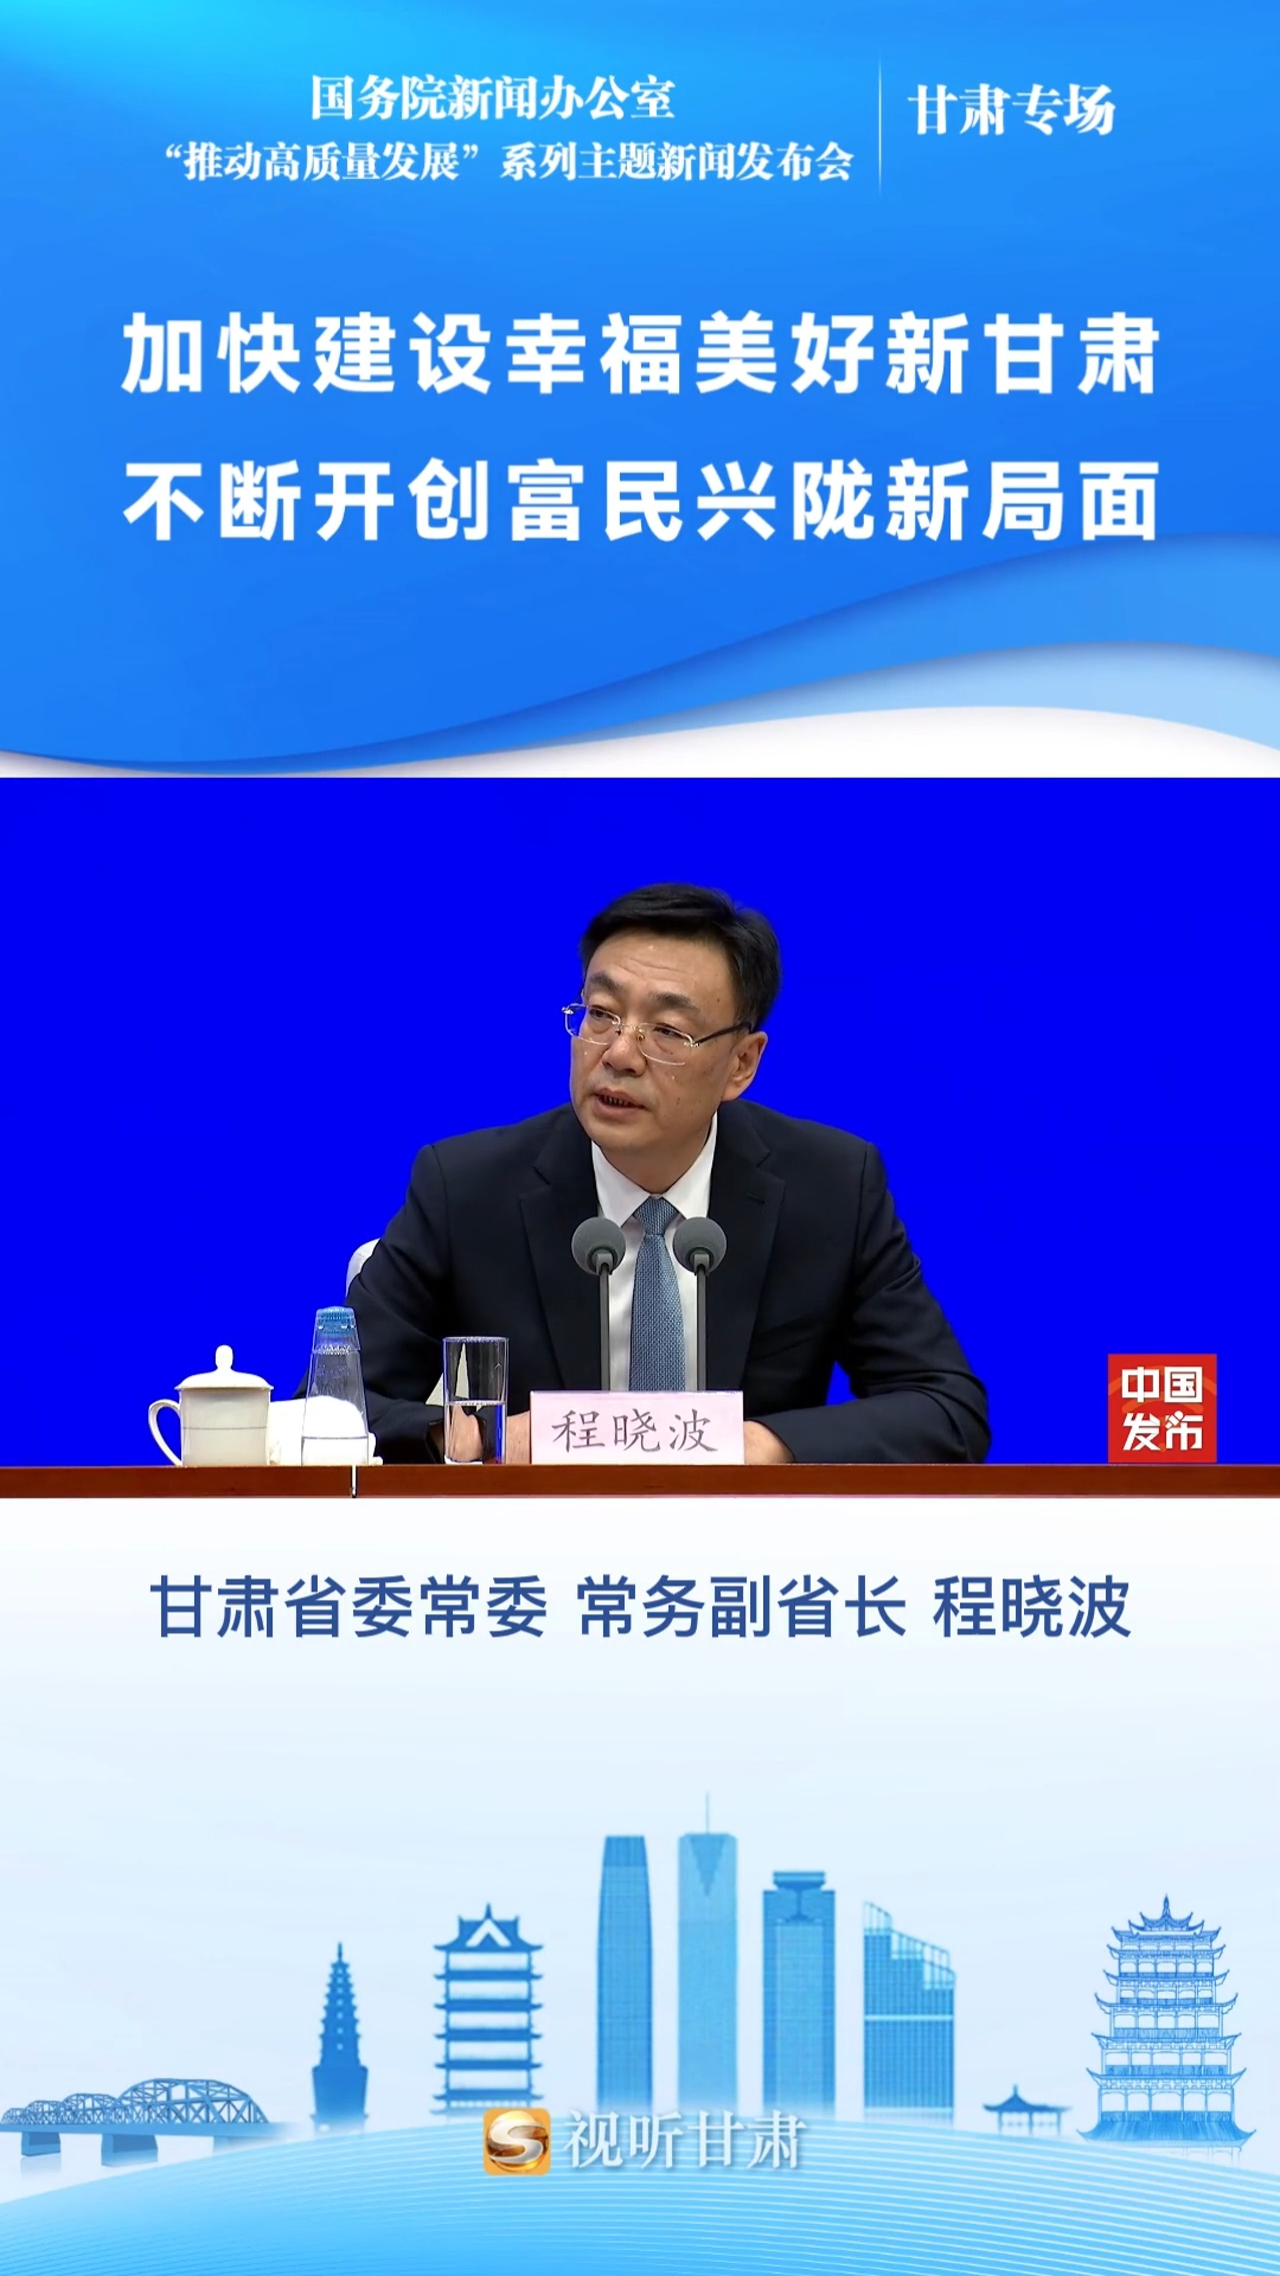 甘肃省委常委,常务副省长程晓波:在统筹抓好各方面重建工作的同时